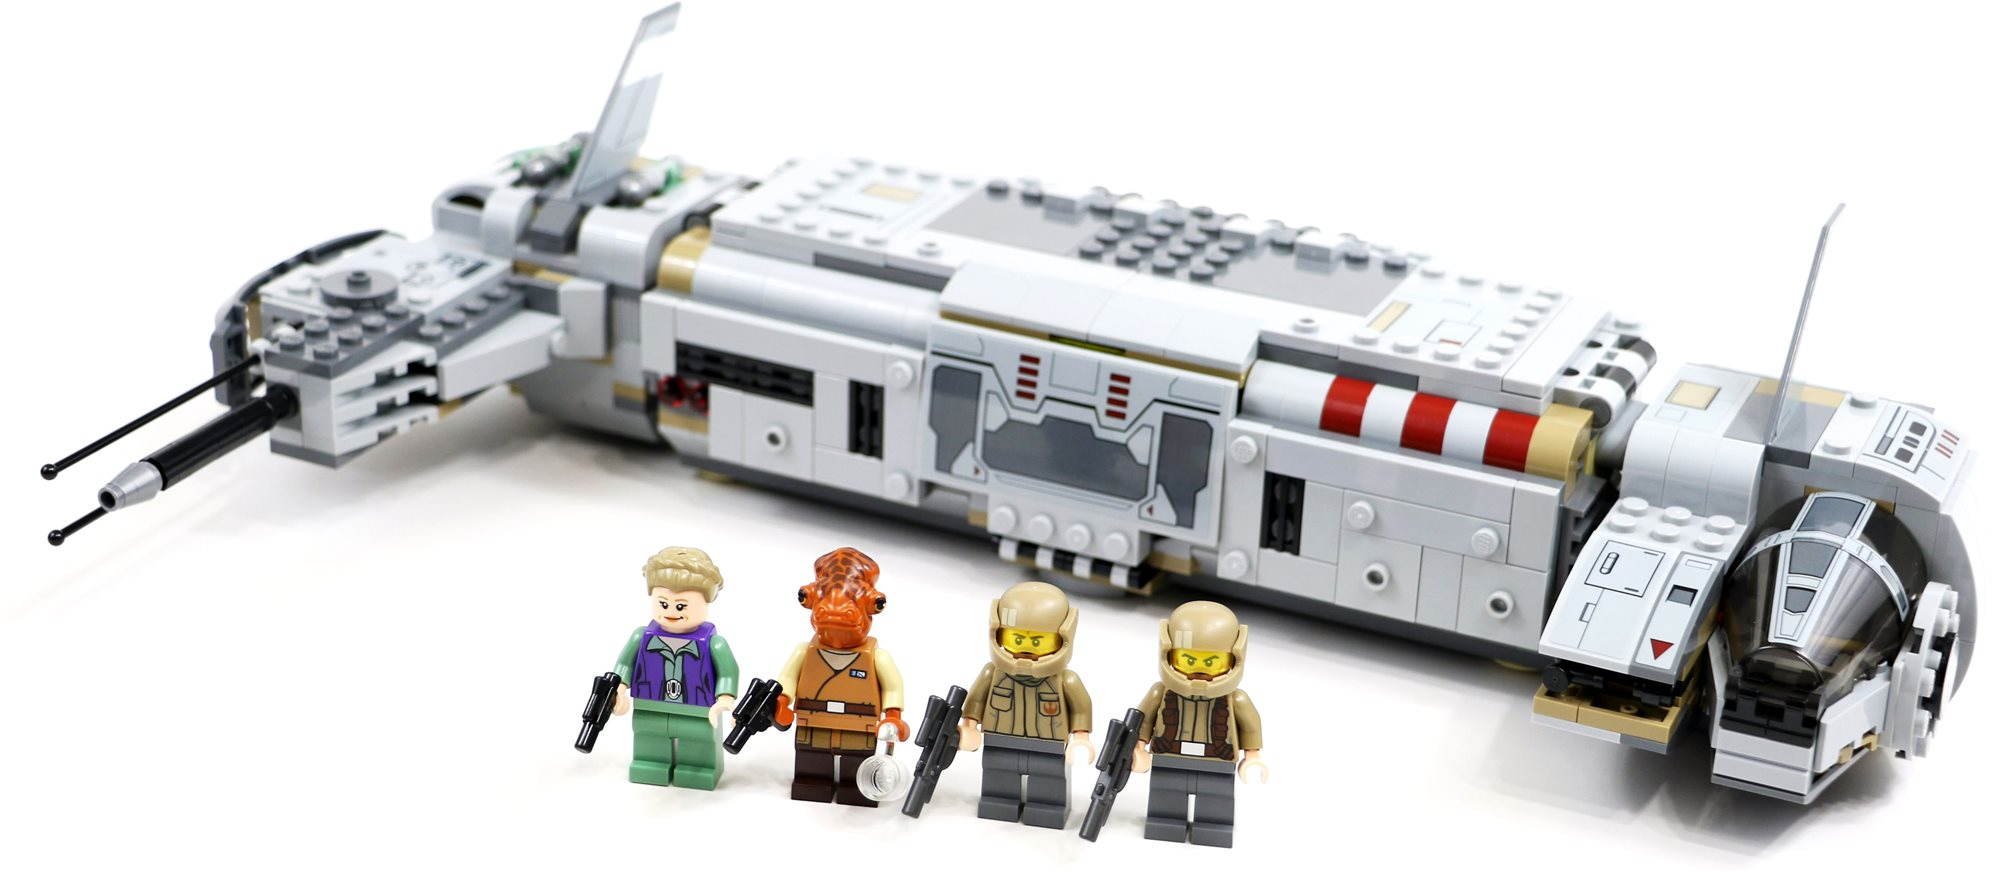 LEGO Star Wars 75140 Resistance Troop Transporter - Building Set